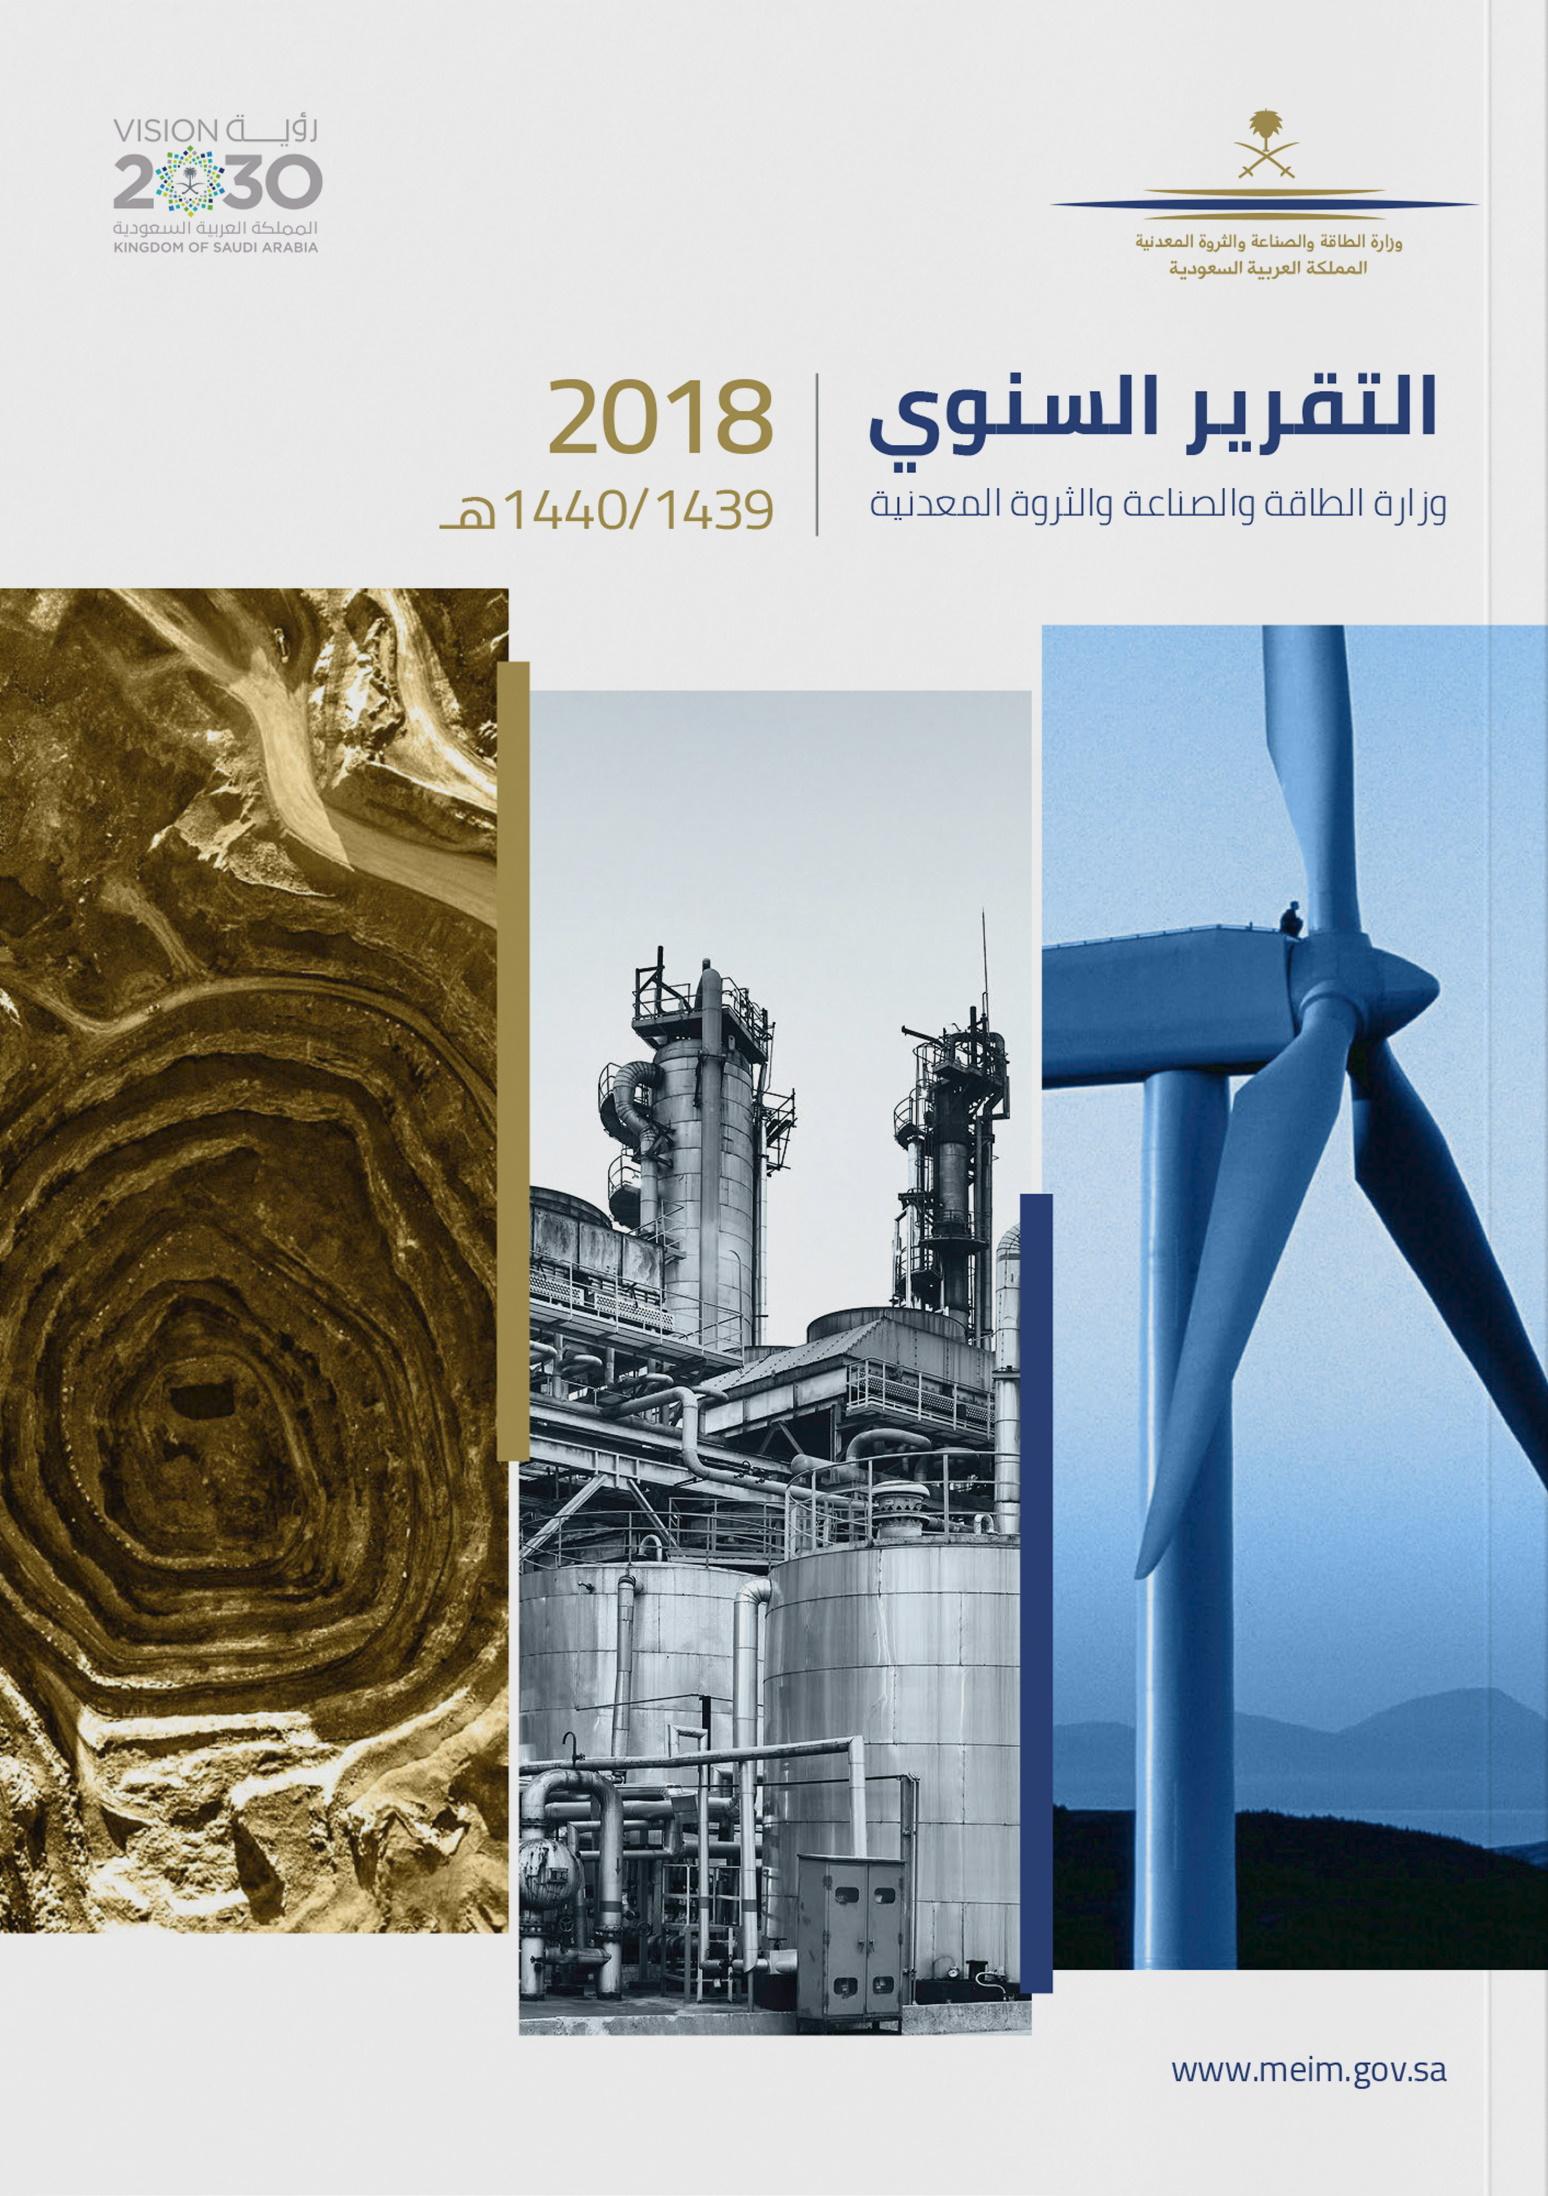 وزارة الطاقة والصناعة والثروة المعدنية (2018)